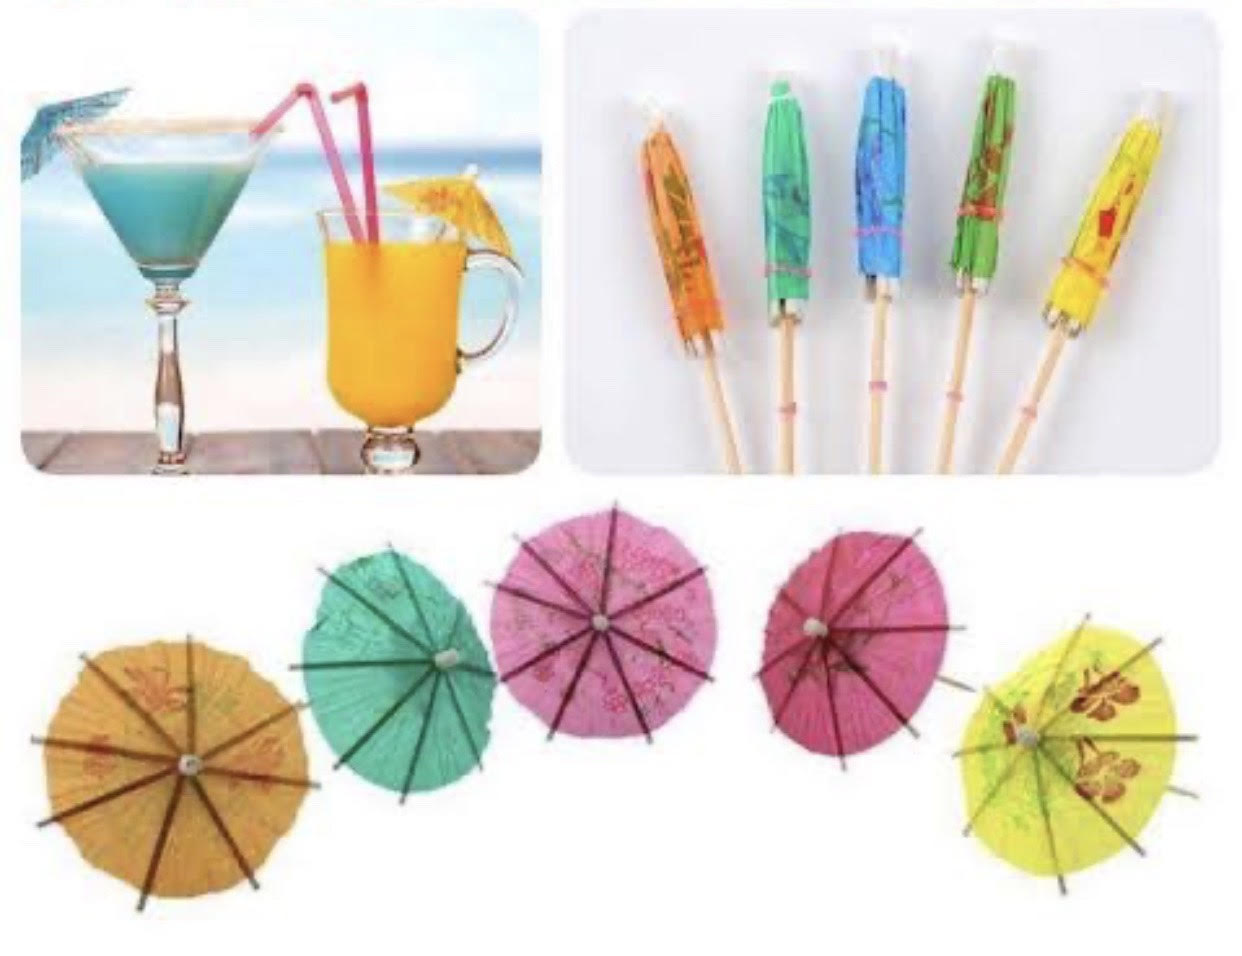 ร่มตกแต่งจิ๋วคละสี Umbrella bamboo Pick100Pcs(ชิ้น)ใช้ตกแต่งอาหาร เครื่องดื่ม งานหัตถกรรม DIY